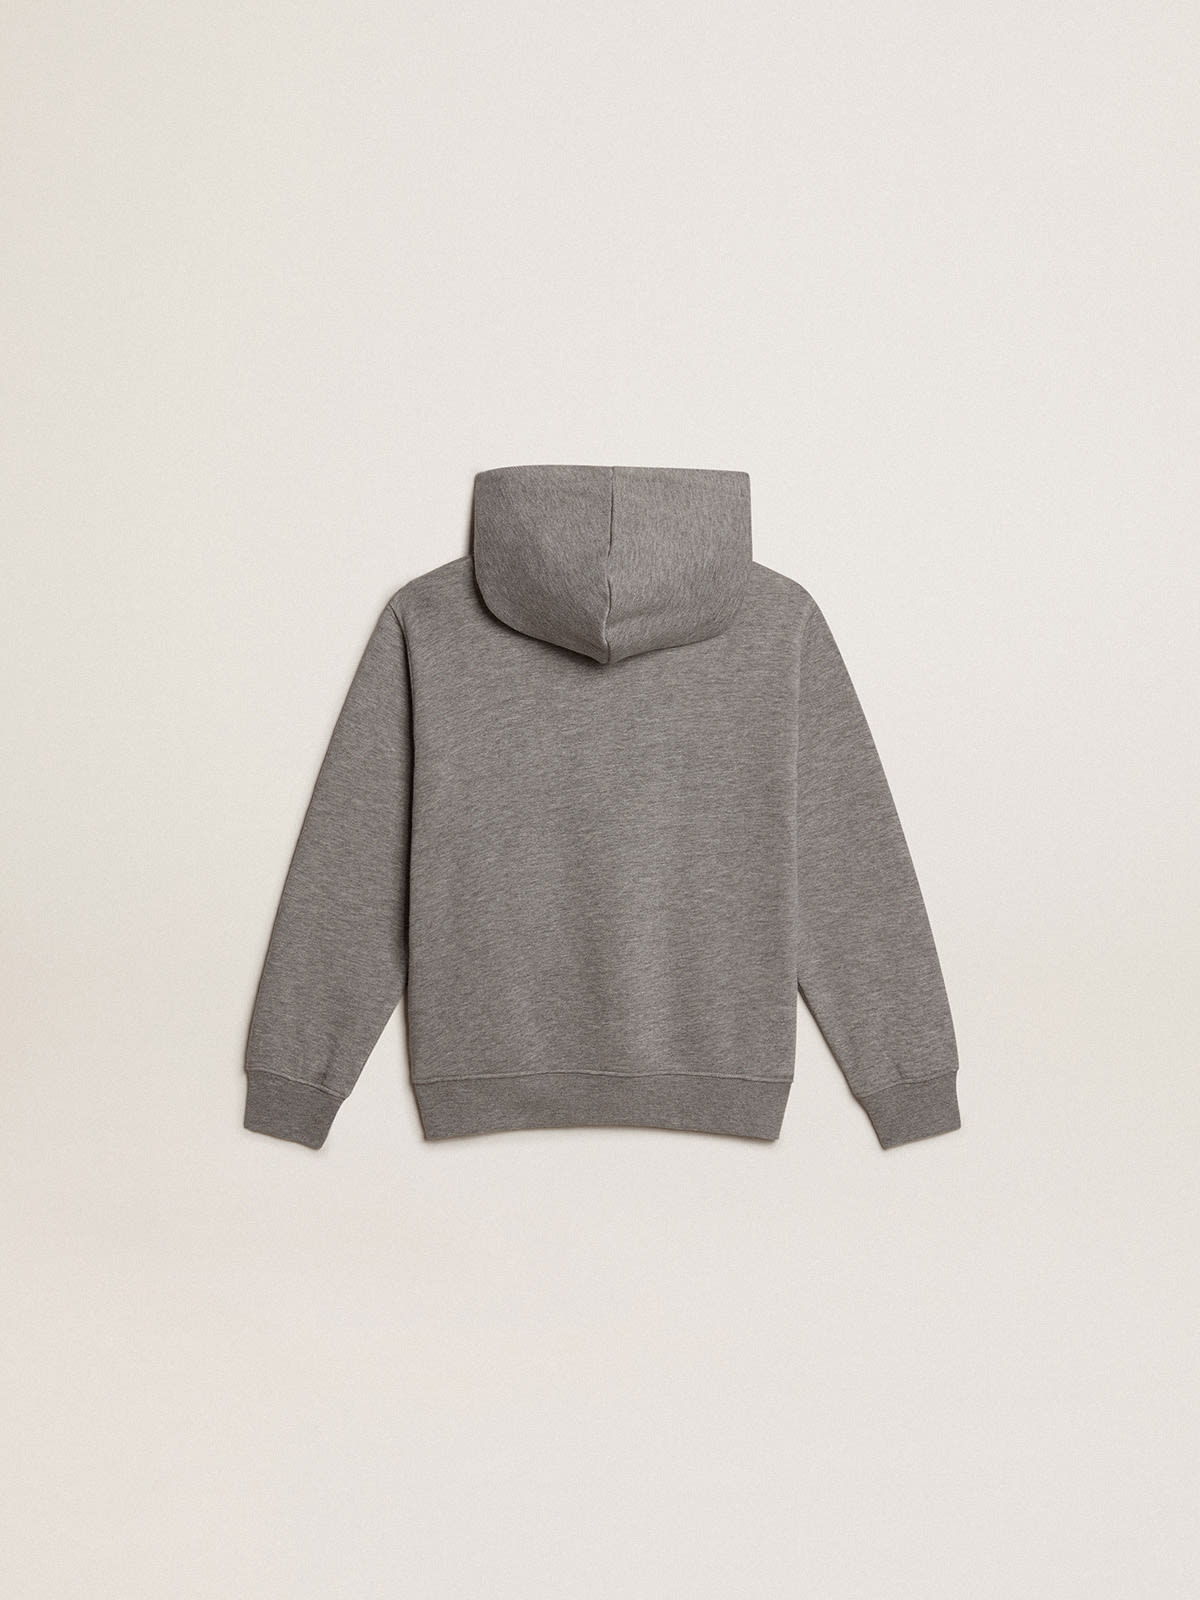 Golden Goose - Boys’ gray cotton hooded sweatshirt in 